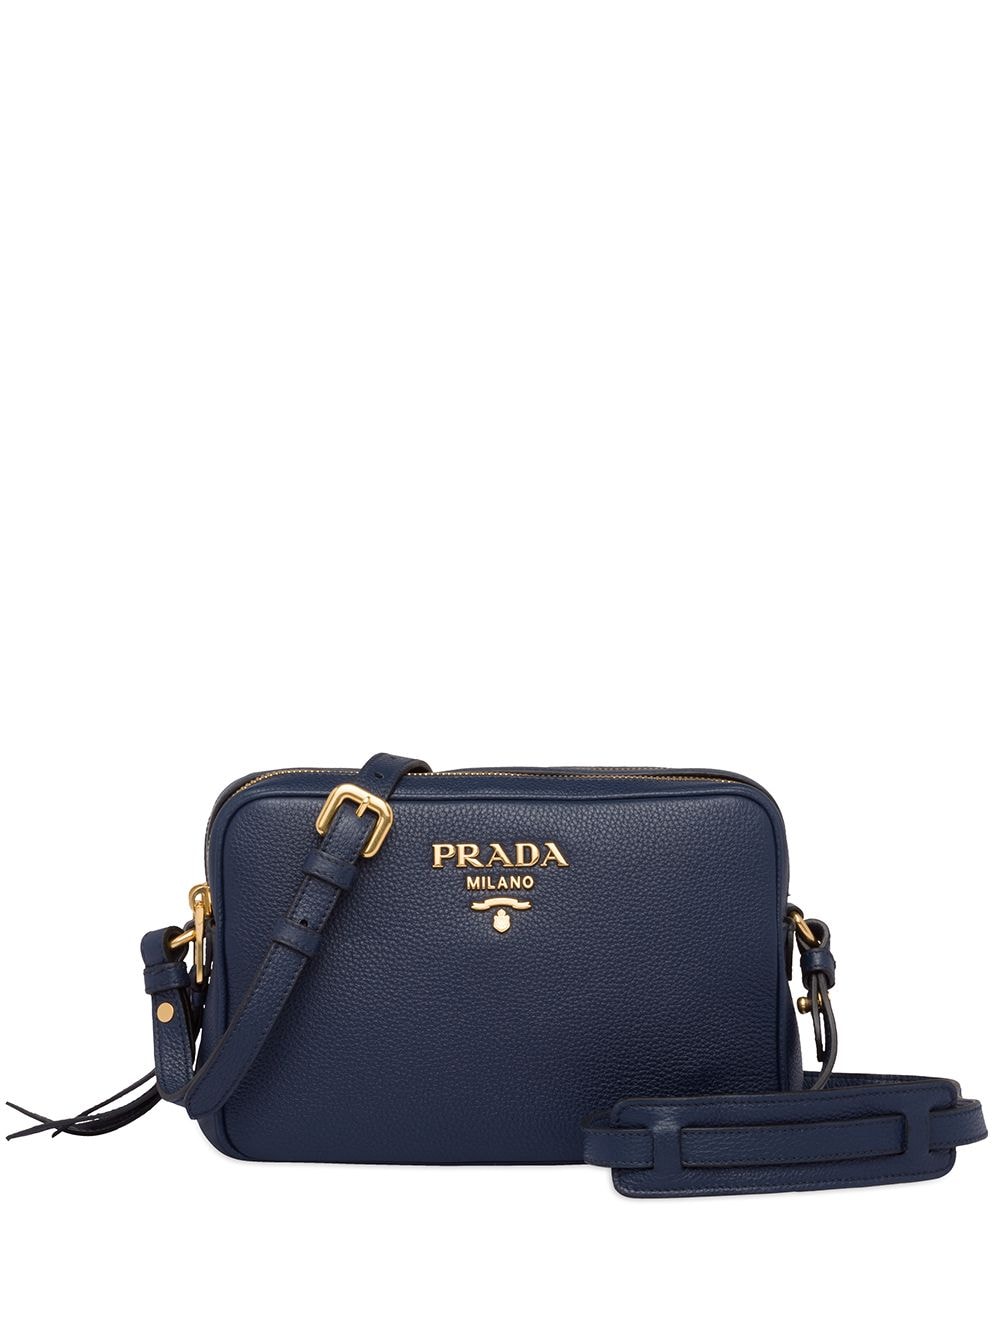 фото Prada текстурная каркасная сумка